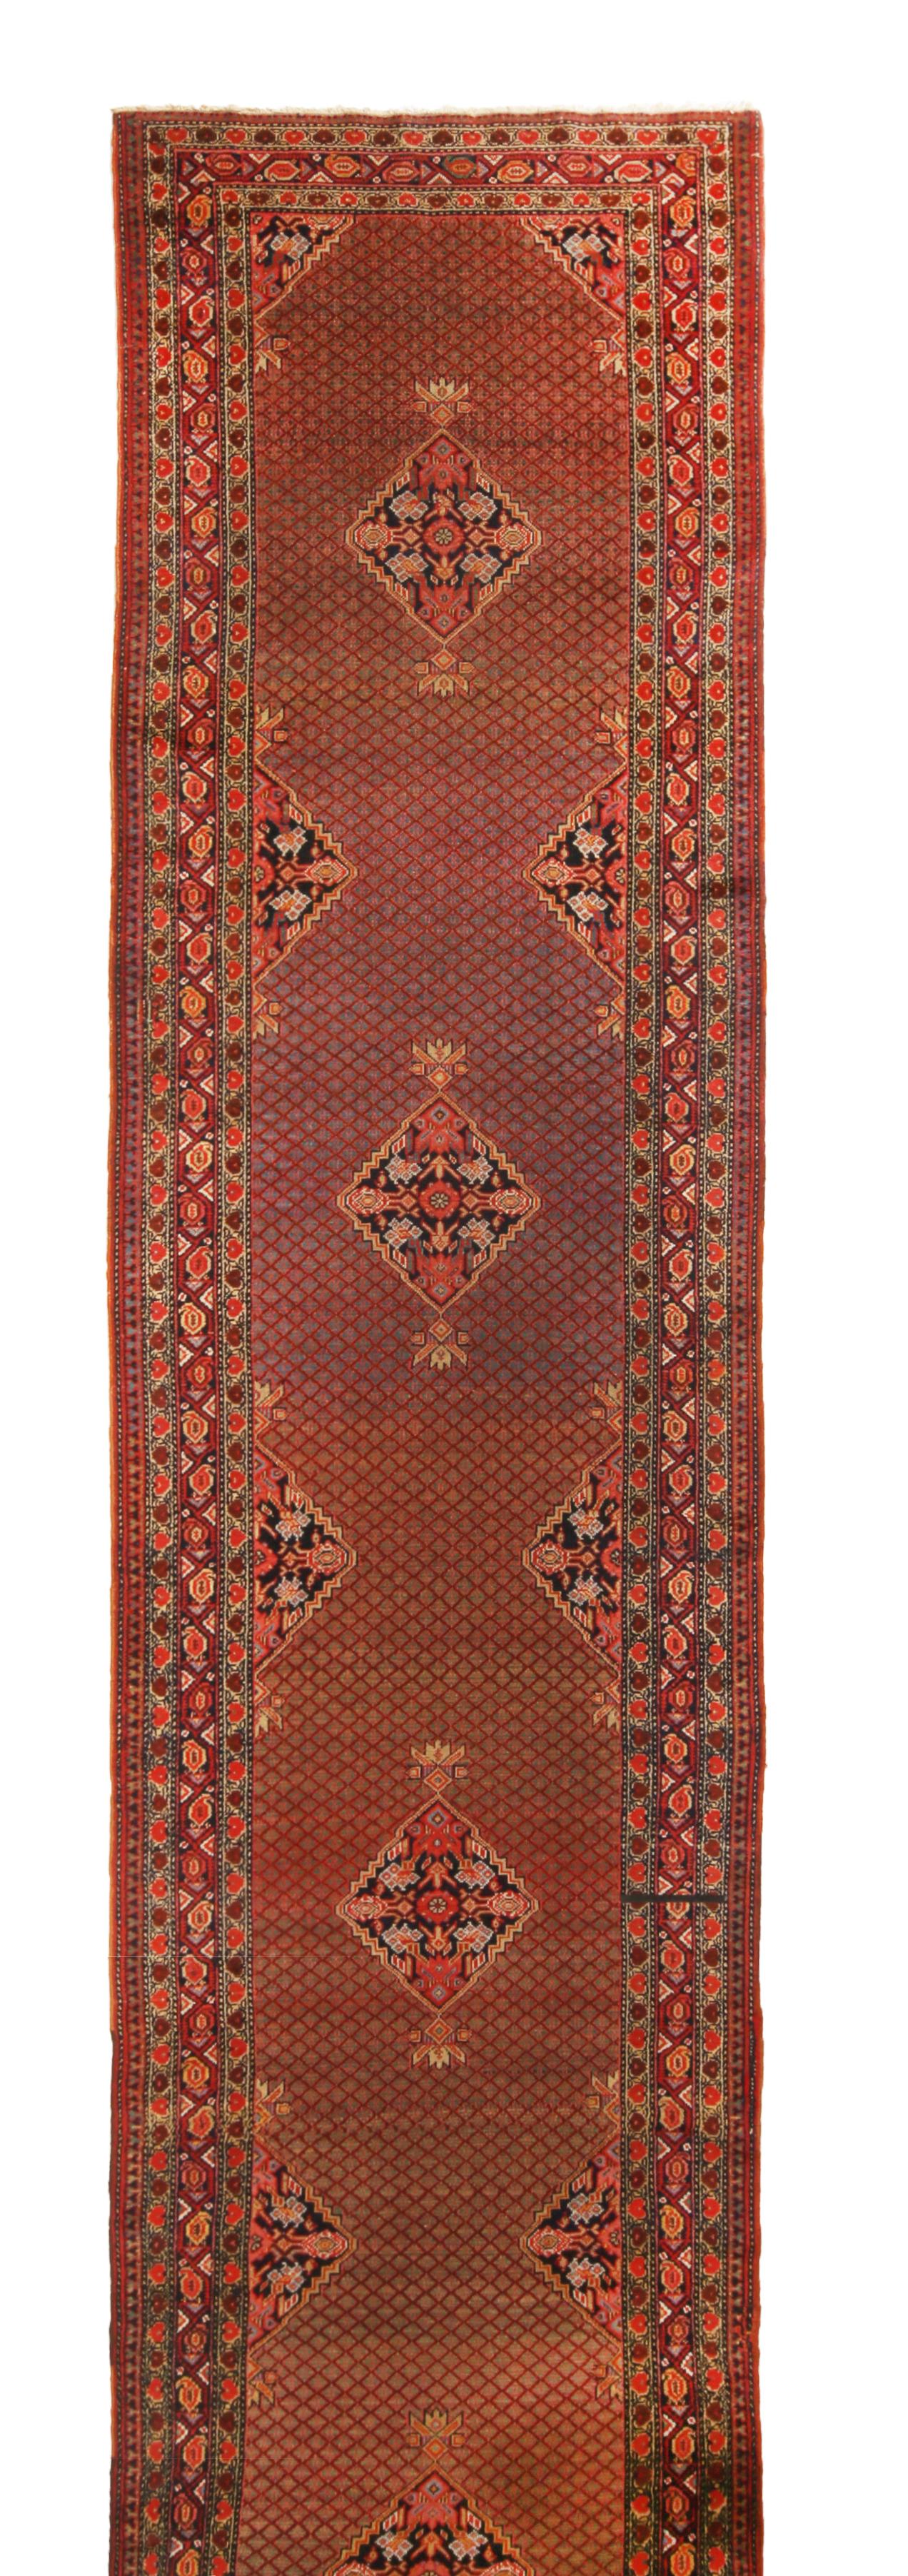 Dieser antike geometrisch-florale Läufer aus Persien stammt aus der Zeit zwischen 1890 und 1900. Er ist aus hochwertiger Wolle handgeknüpft und zeichnet sich durch eine Kombination von Medaillon- und All-Over-Feldmustern aus. Das reichhaltige und